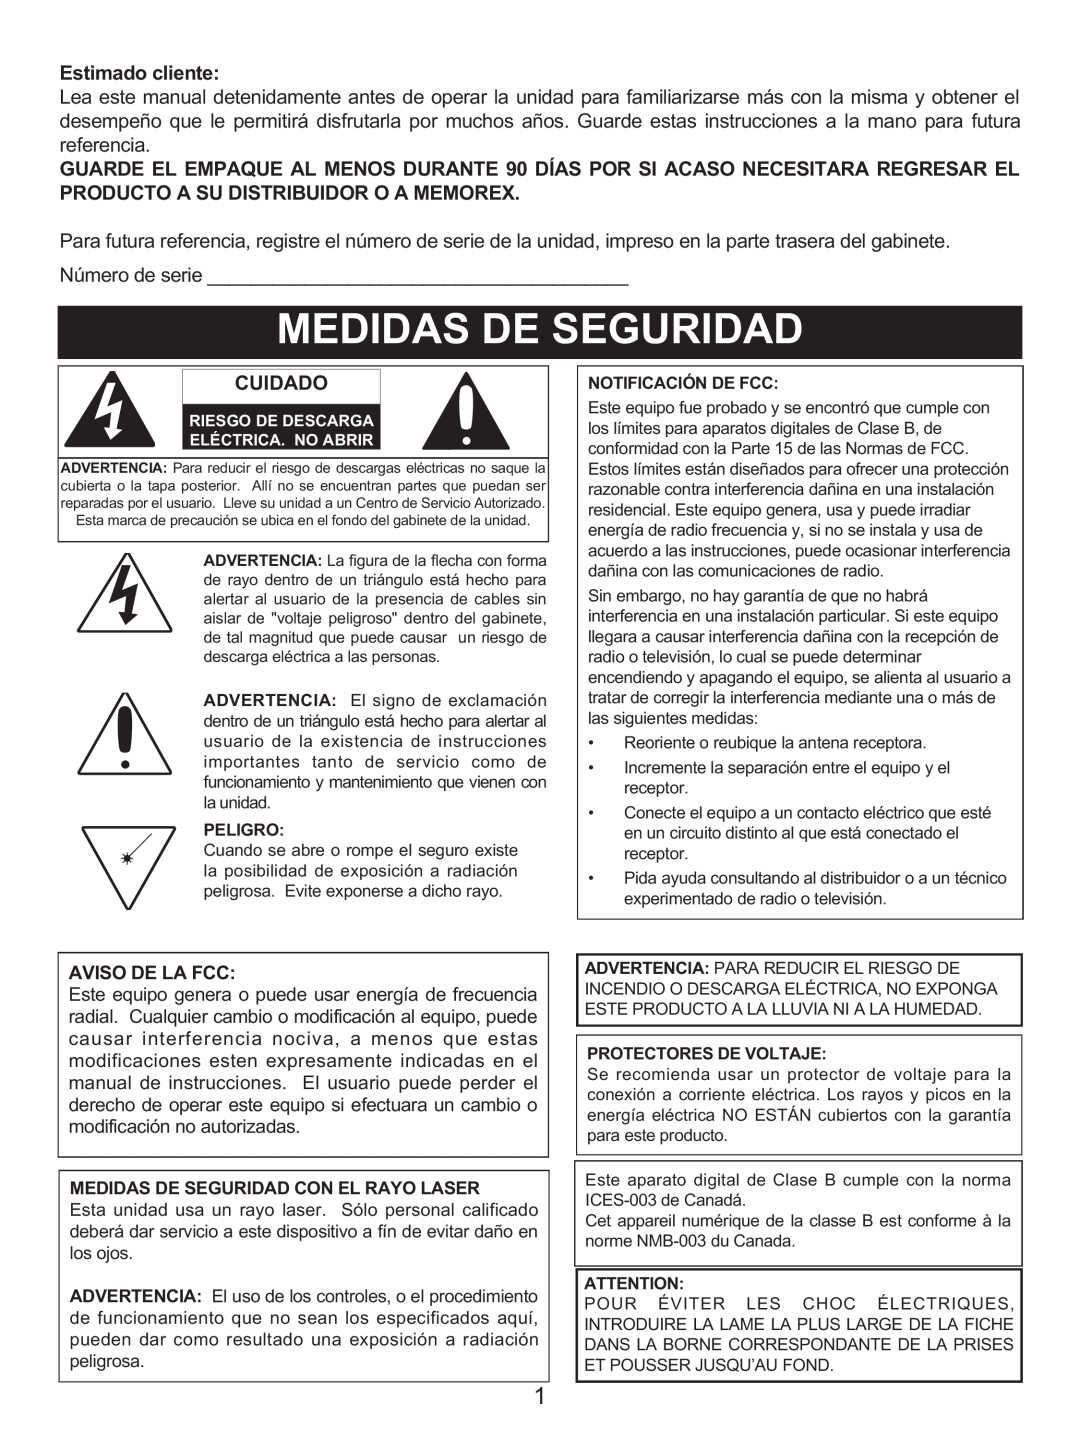 Memorex MX4139 manual Estimado cliente, Cuidado, Aviso De La Fcc, Medidas De Seguridad Con El Rayo Laser 